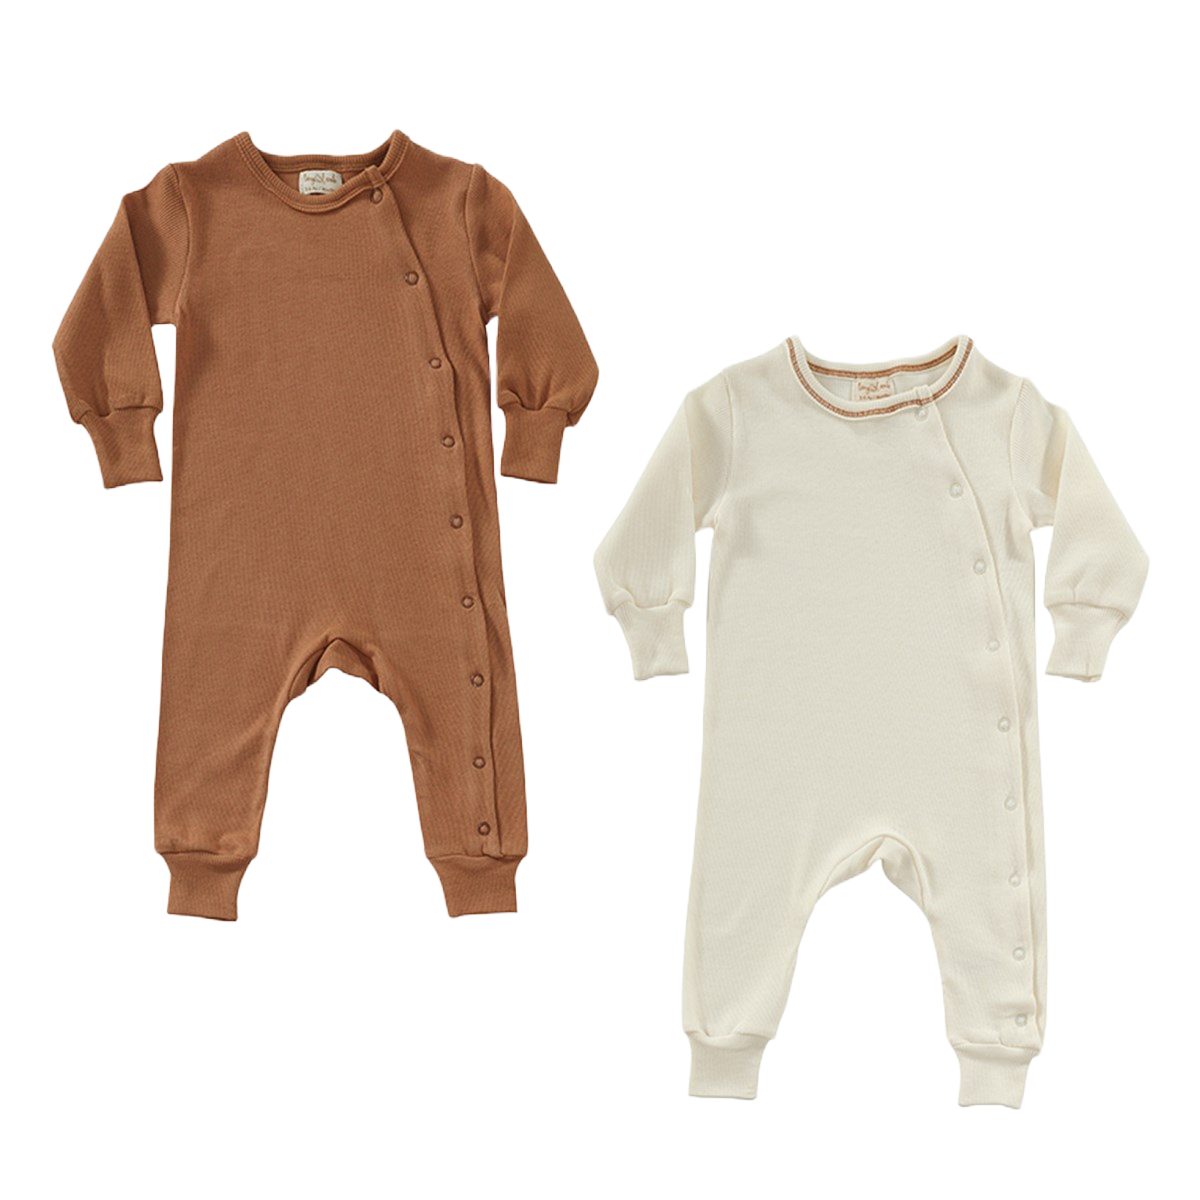 Strampler Strampler Unisex Just2little Baby 2er Anzug Pack 0-18 Monate Neugeborene